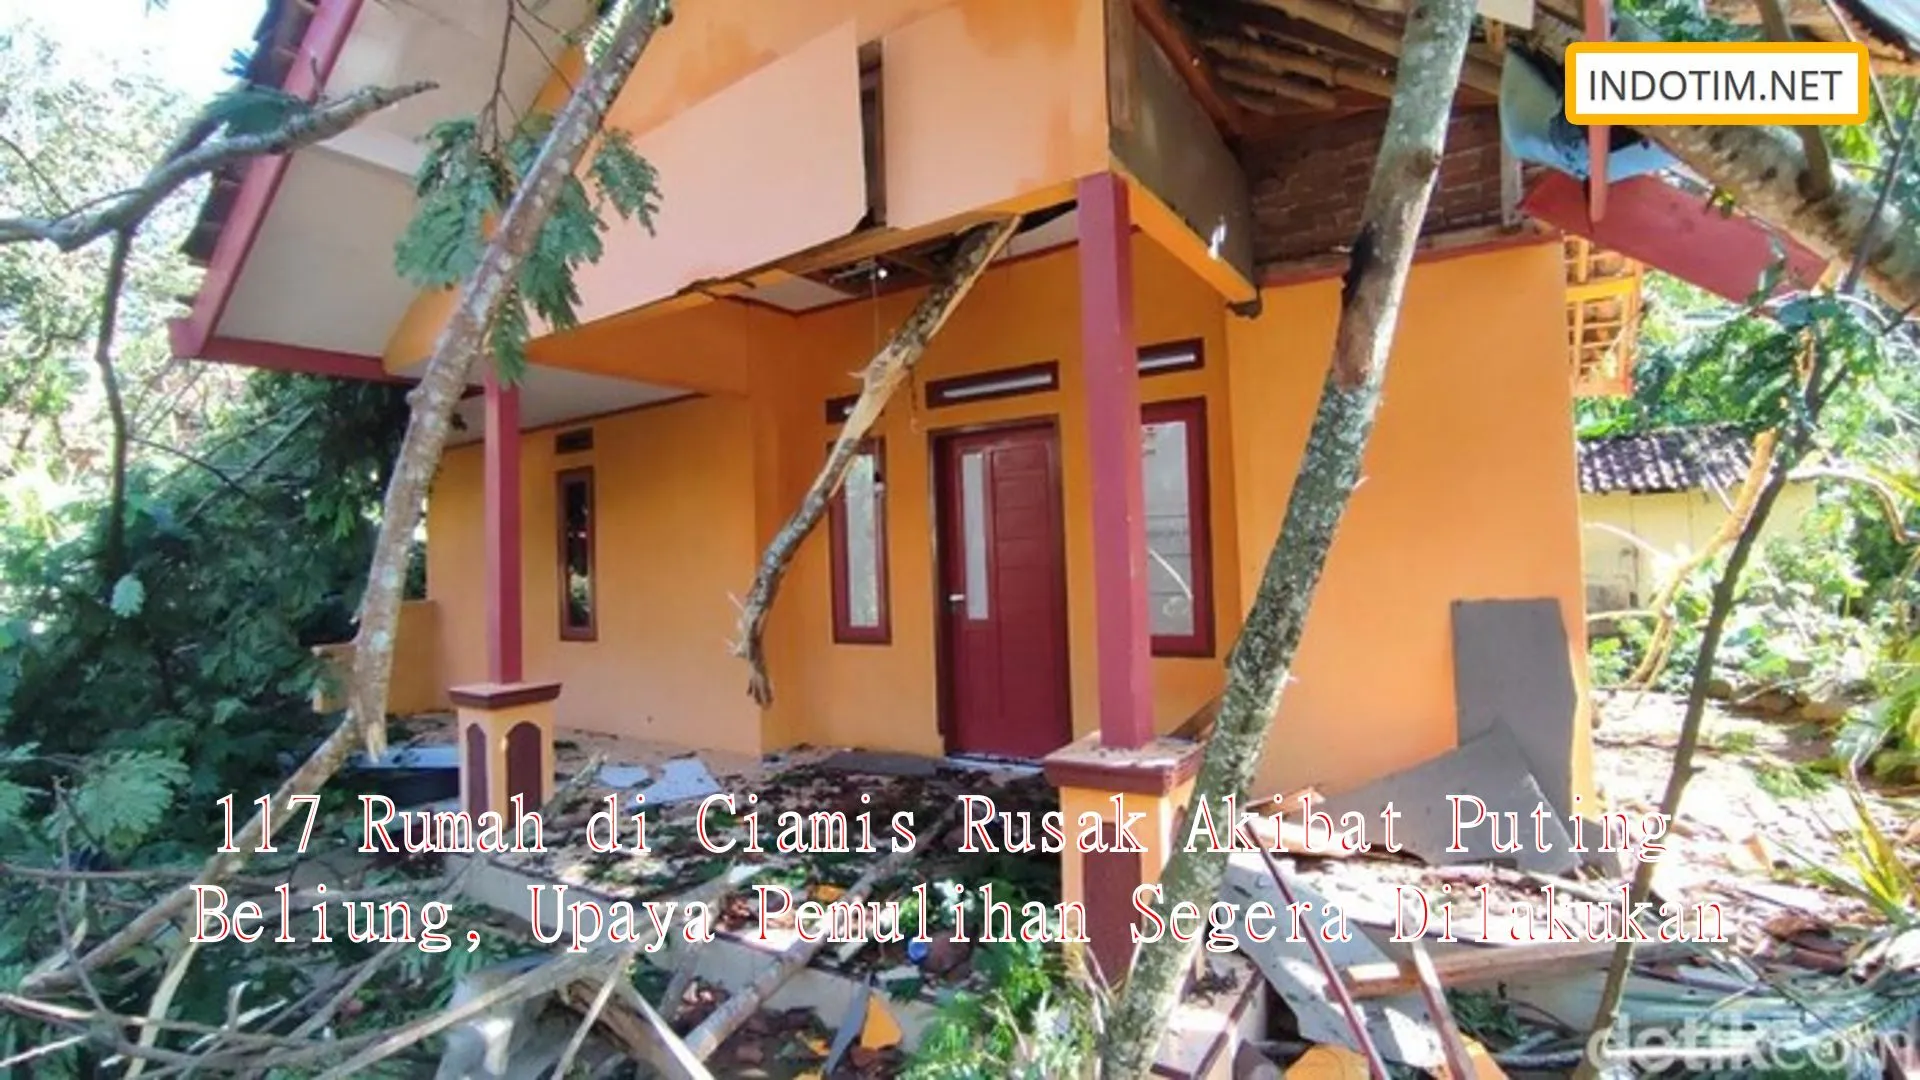 117 Rumah di Ciamis Rusak Akibat Puting Beliung, Upaya Pemulihan Segera Dilakukan